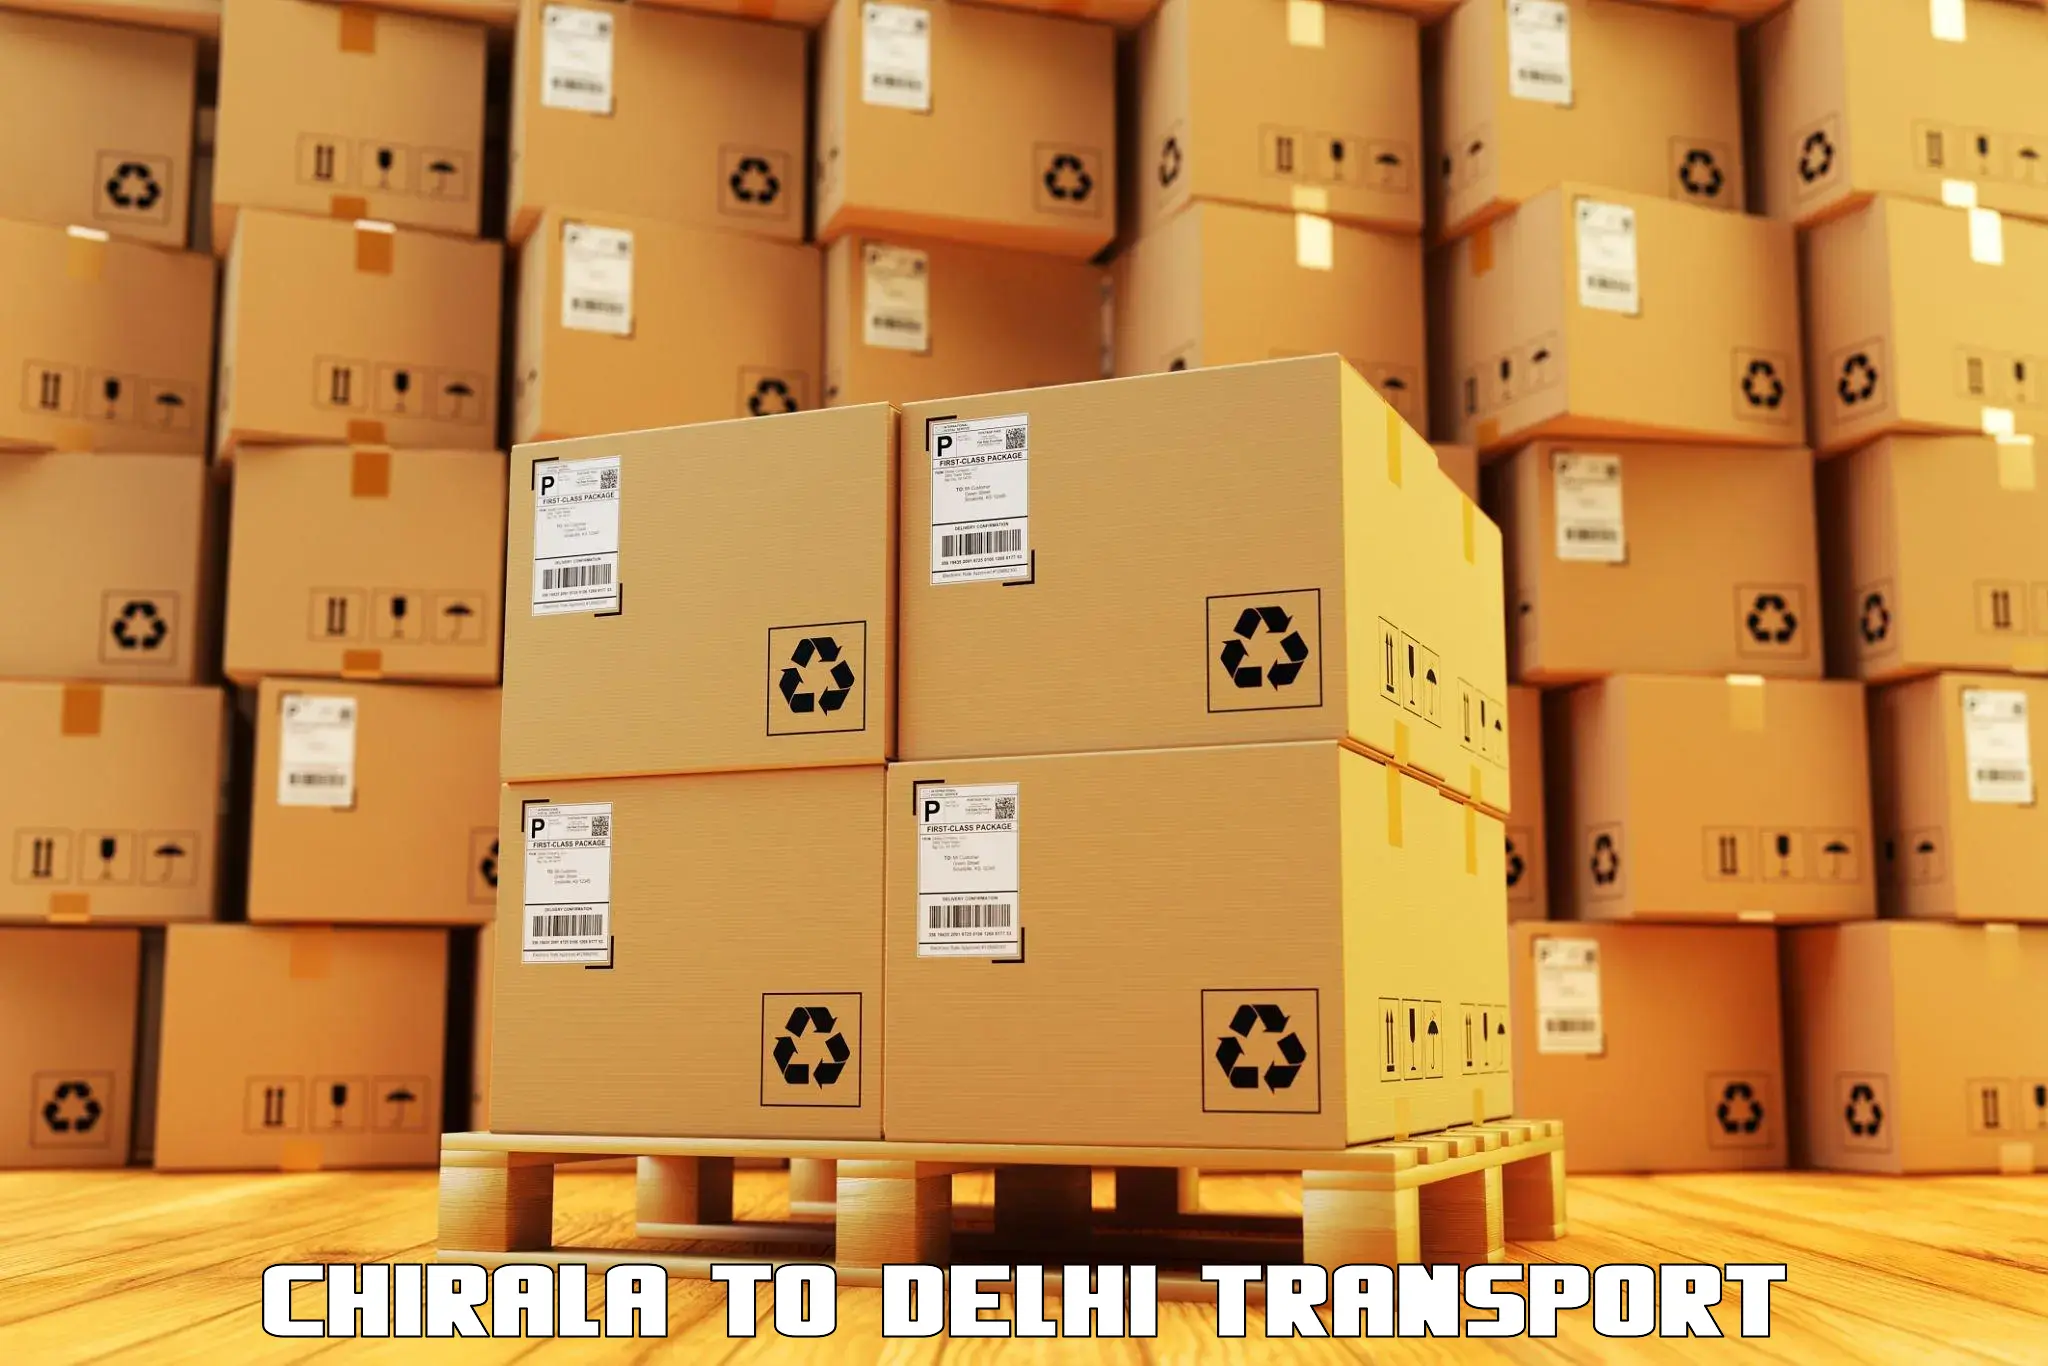 Bike transport service Chirala to Delhi